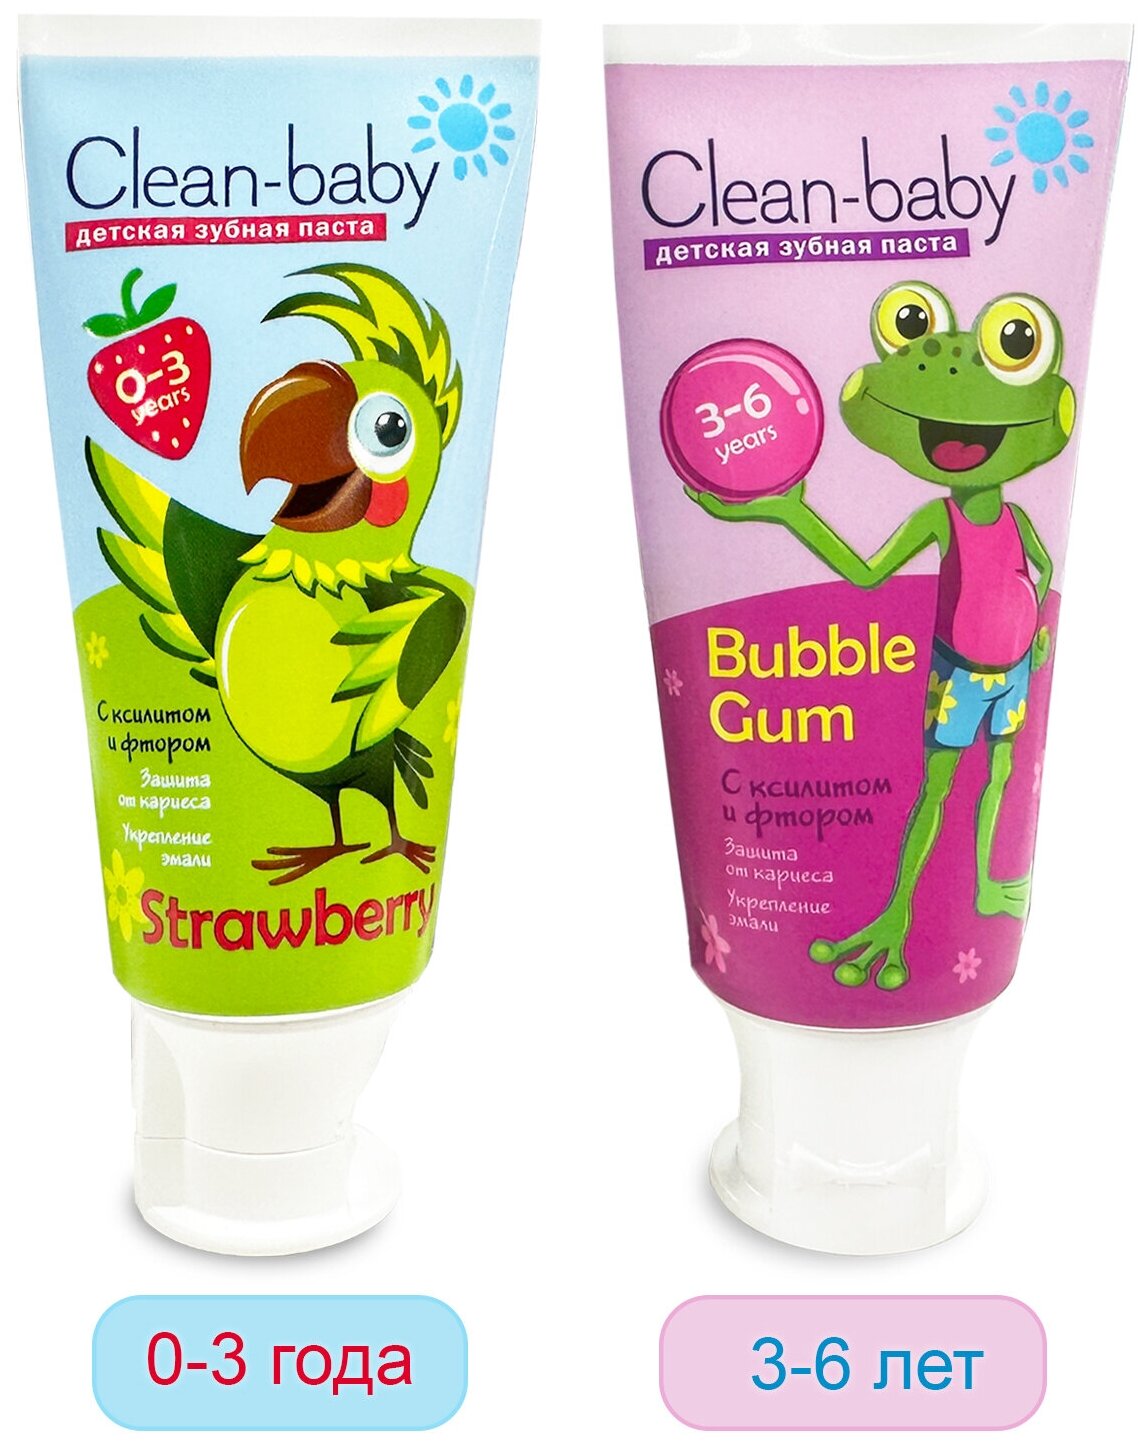 Набор Clean-baby детская зубная паста, 0-3 года 50 мл Клубника + Clean-baby детская зубная паста 3-6 лет 50 мл Жевательная резинка